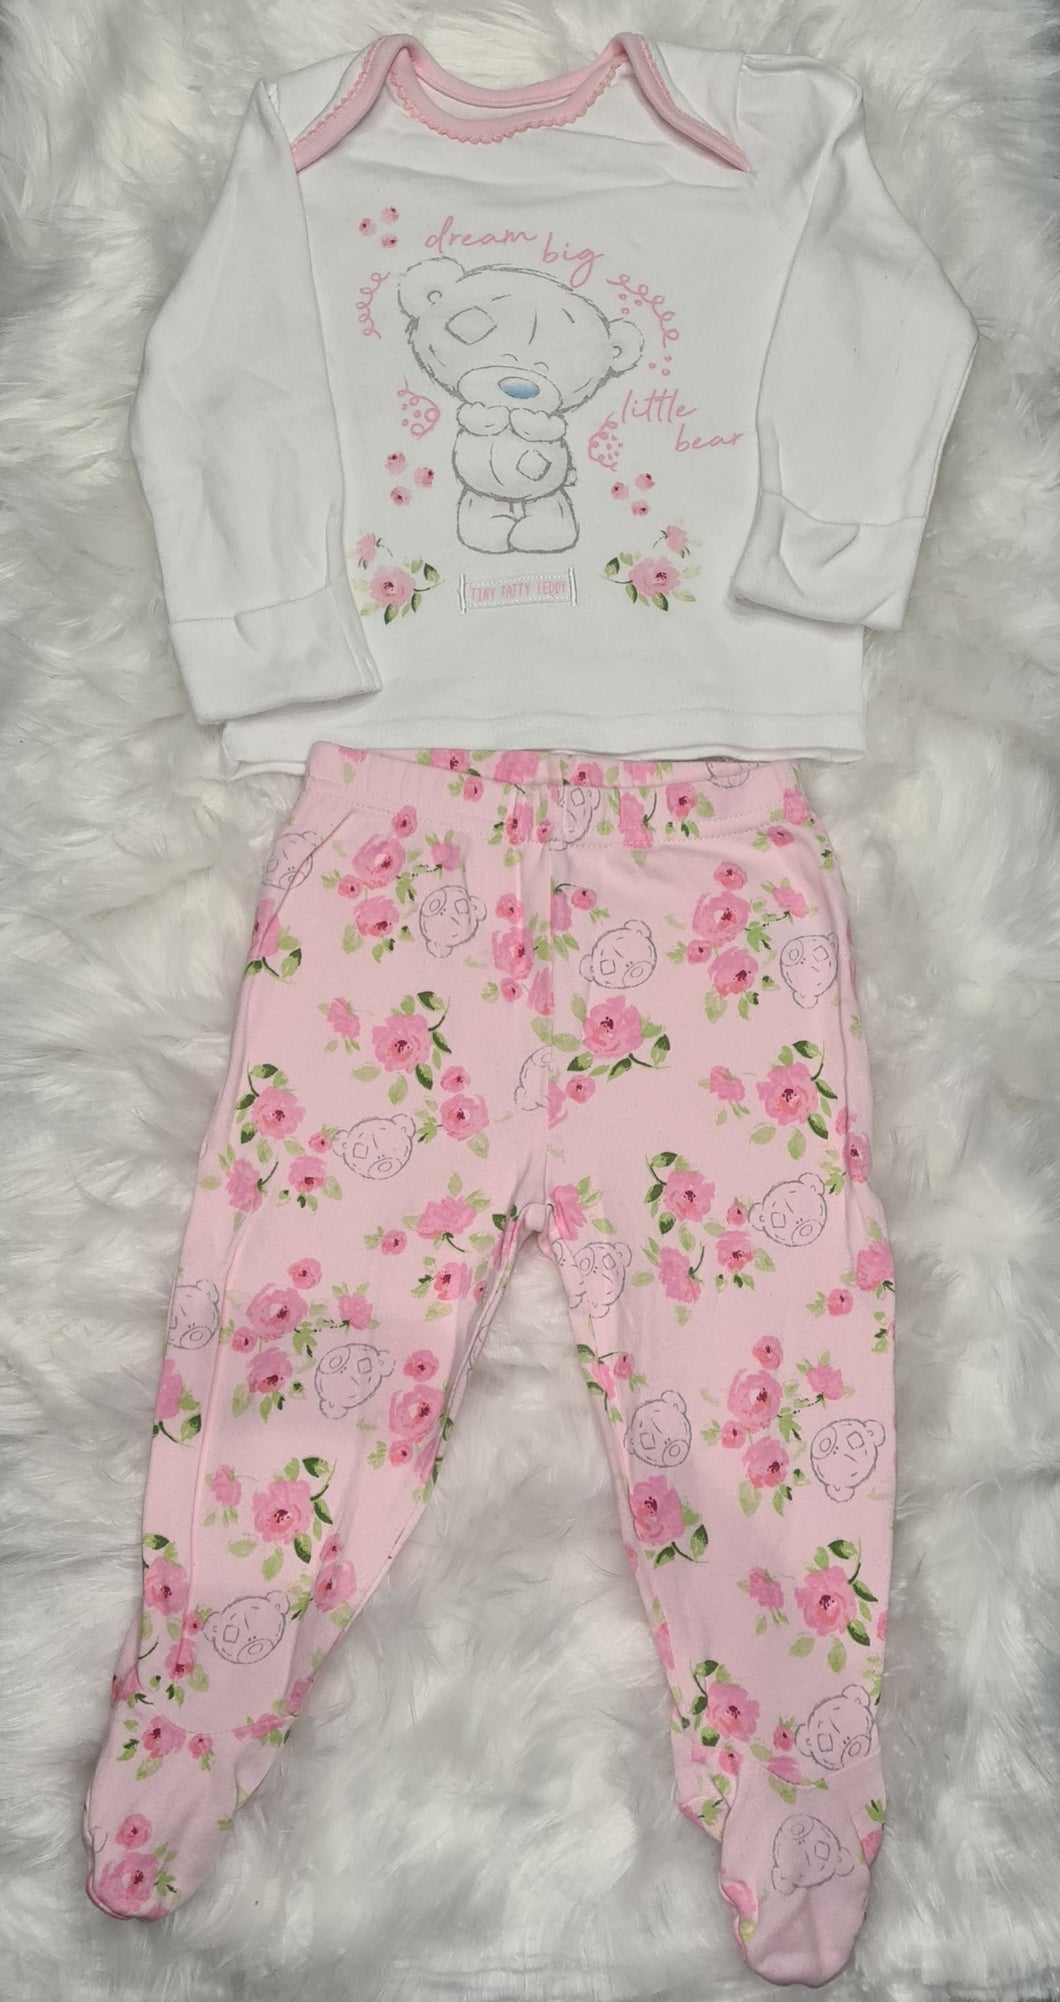 Girls 6-9 months tatti teddy pyjama set